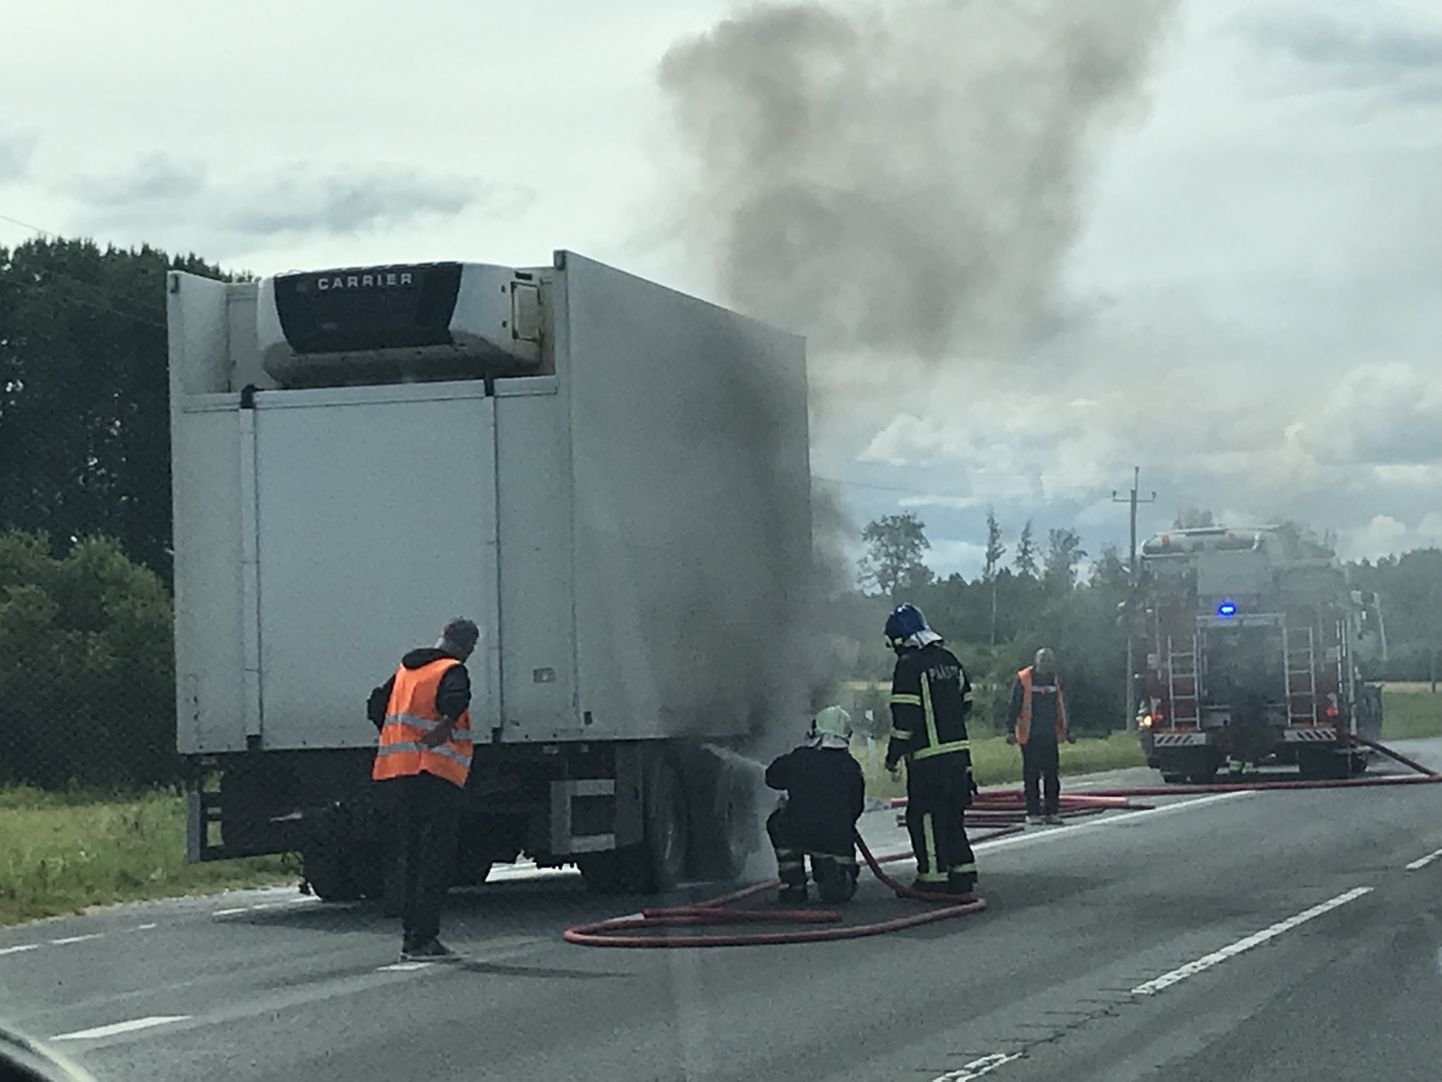 На шоссе у грузовика загорелся прицеп.